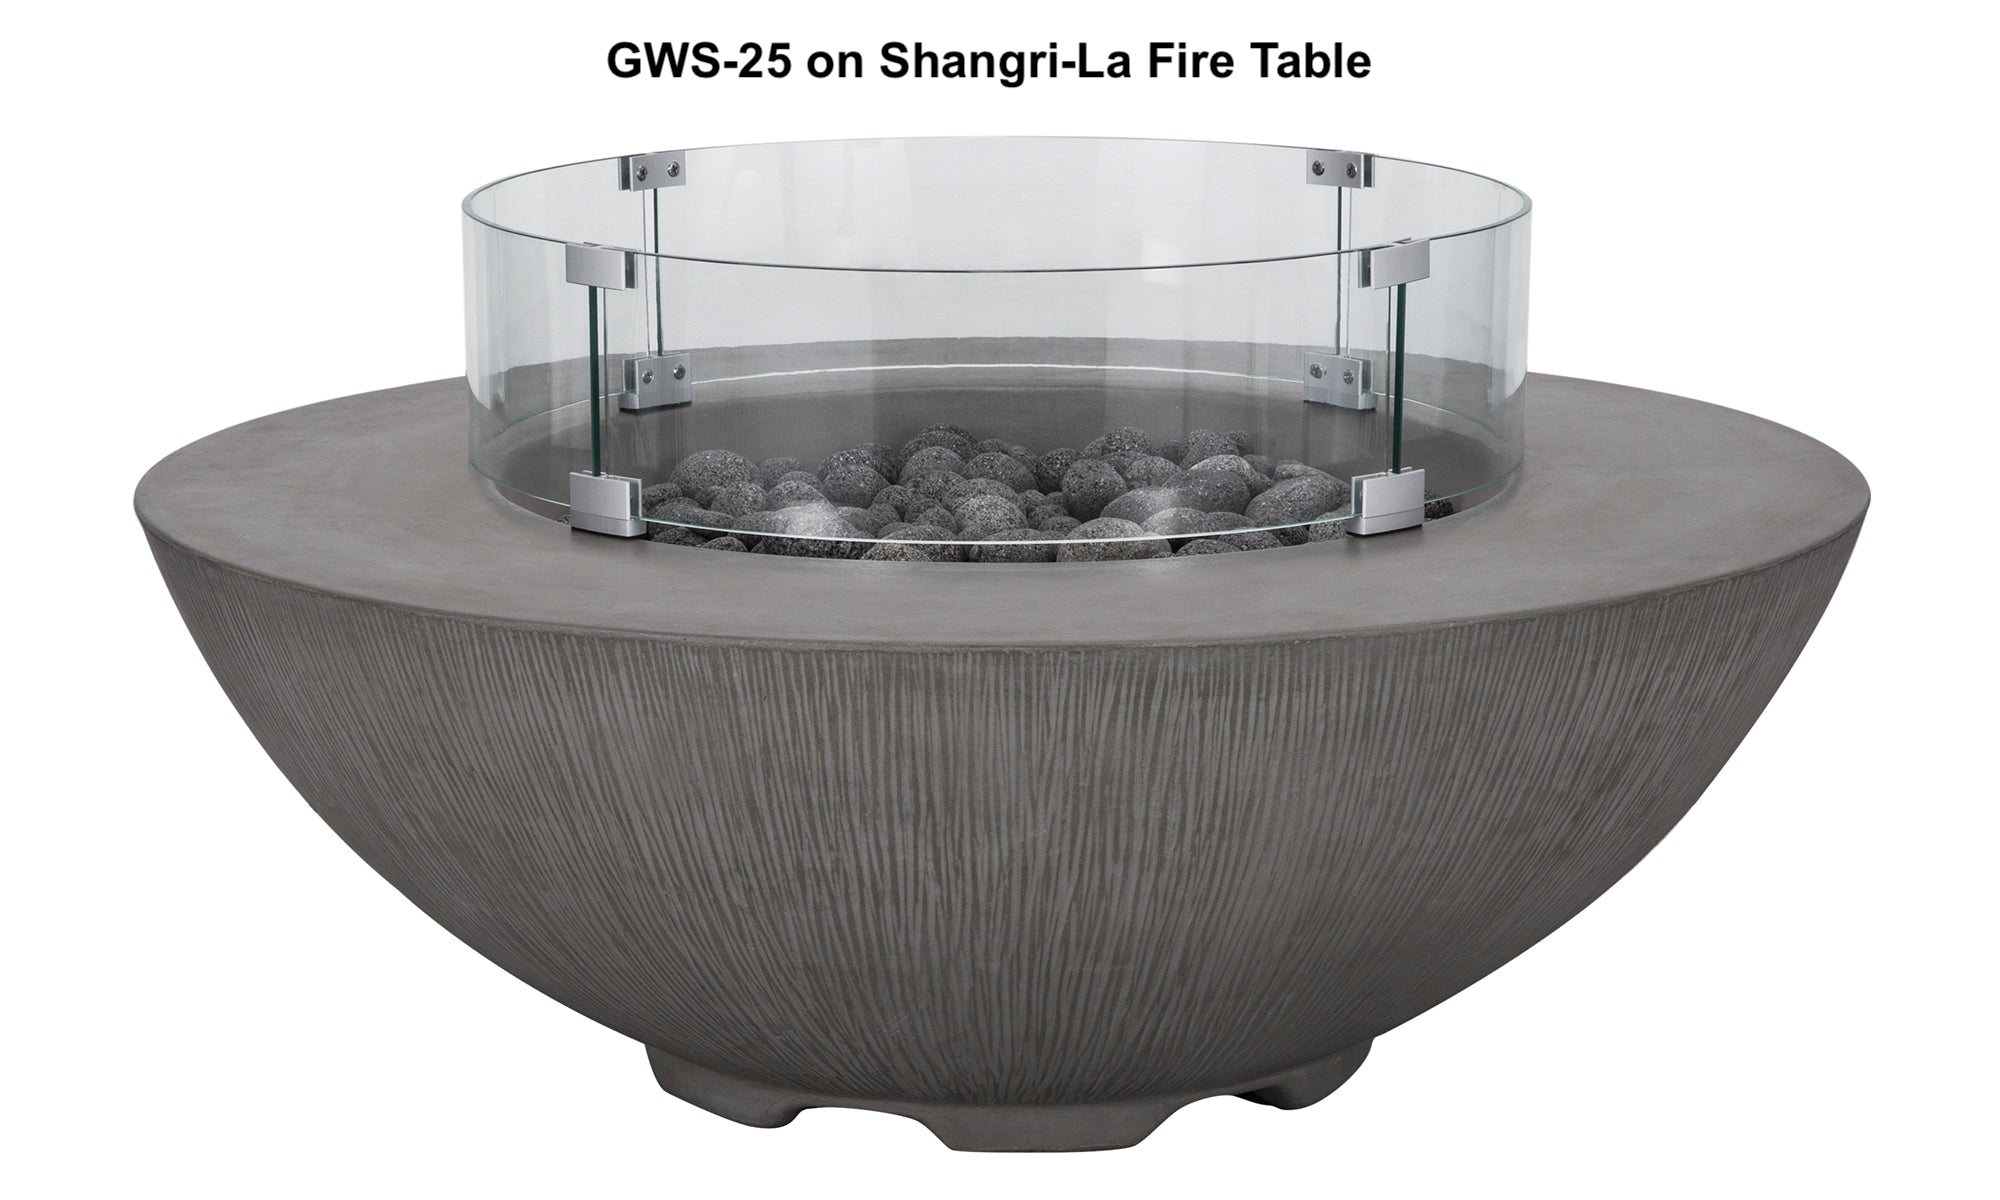 Shangri-La Fire Table